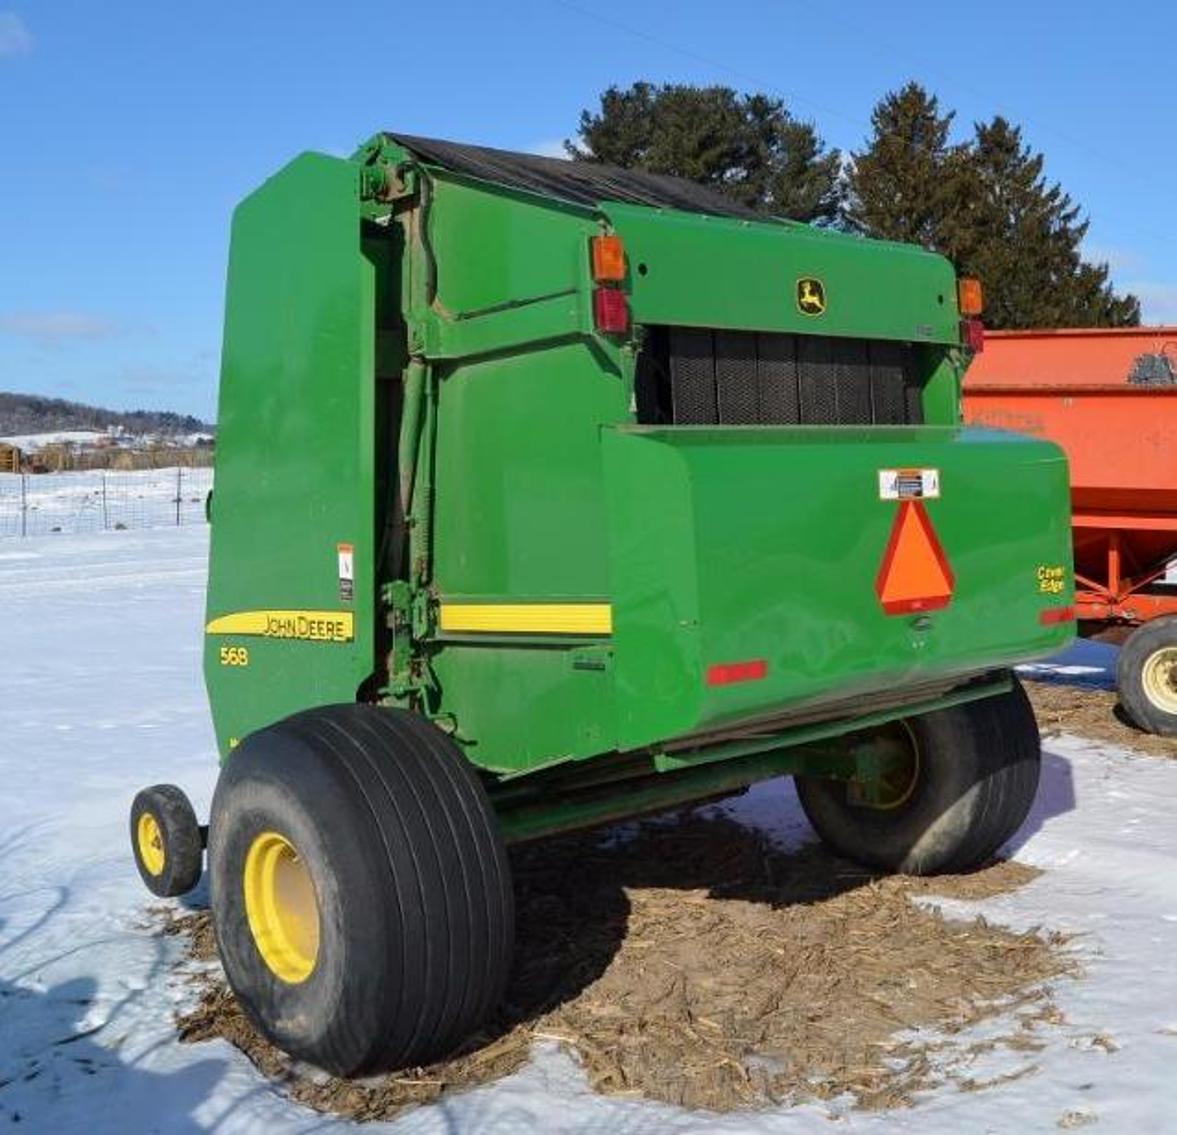 John Deere Tractors and Farm Equipment